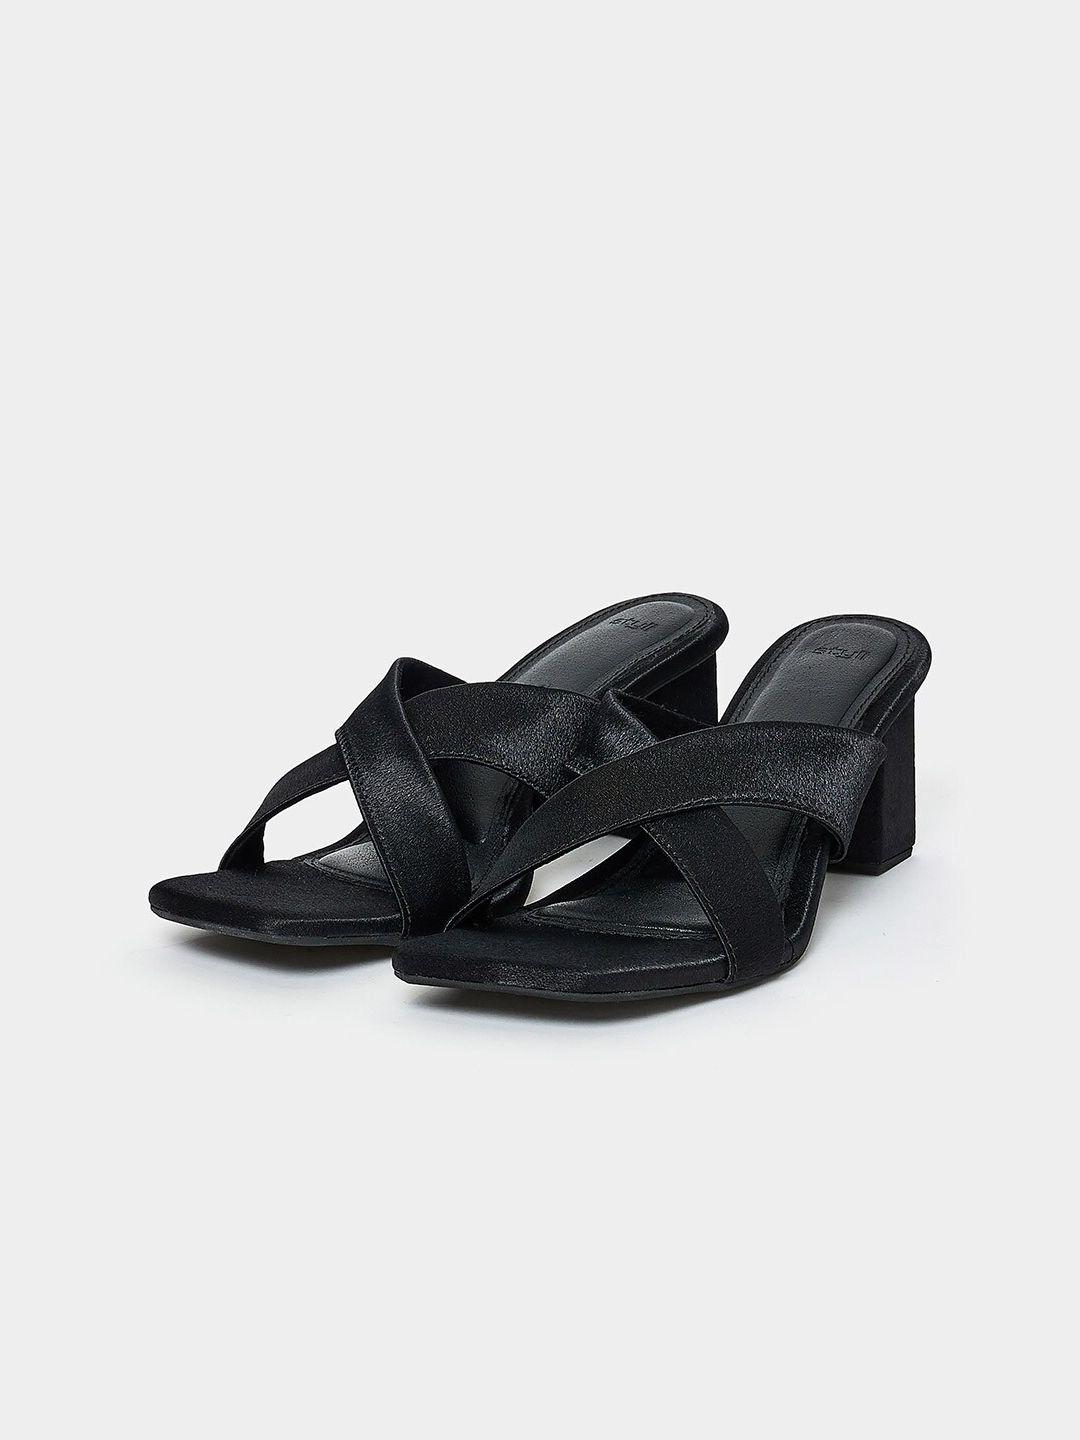 styli-black-cross-strap-block-heels